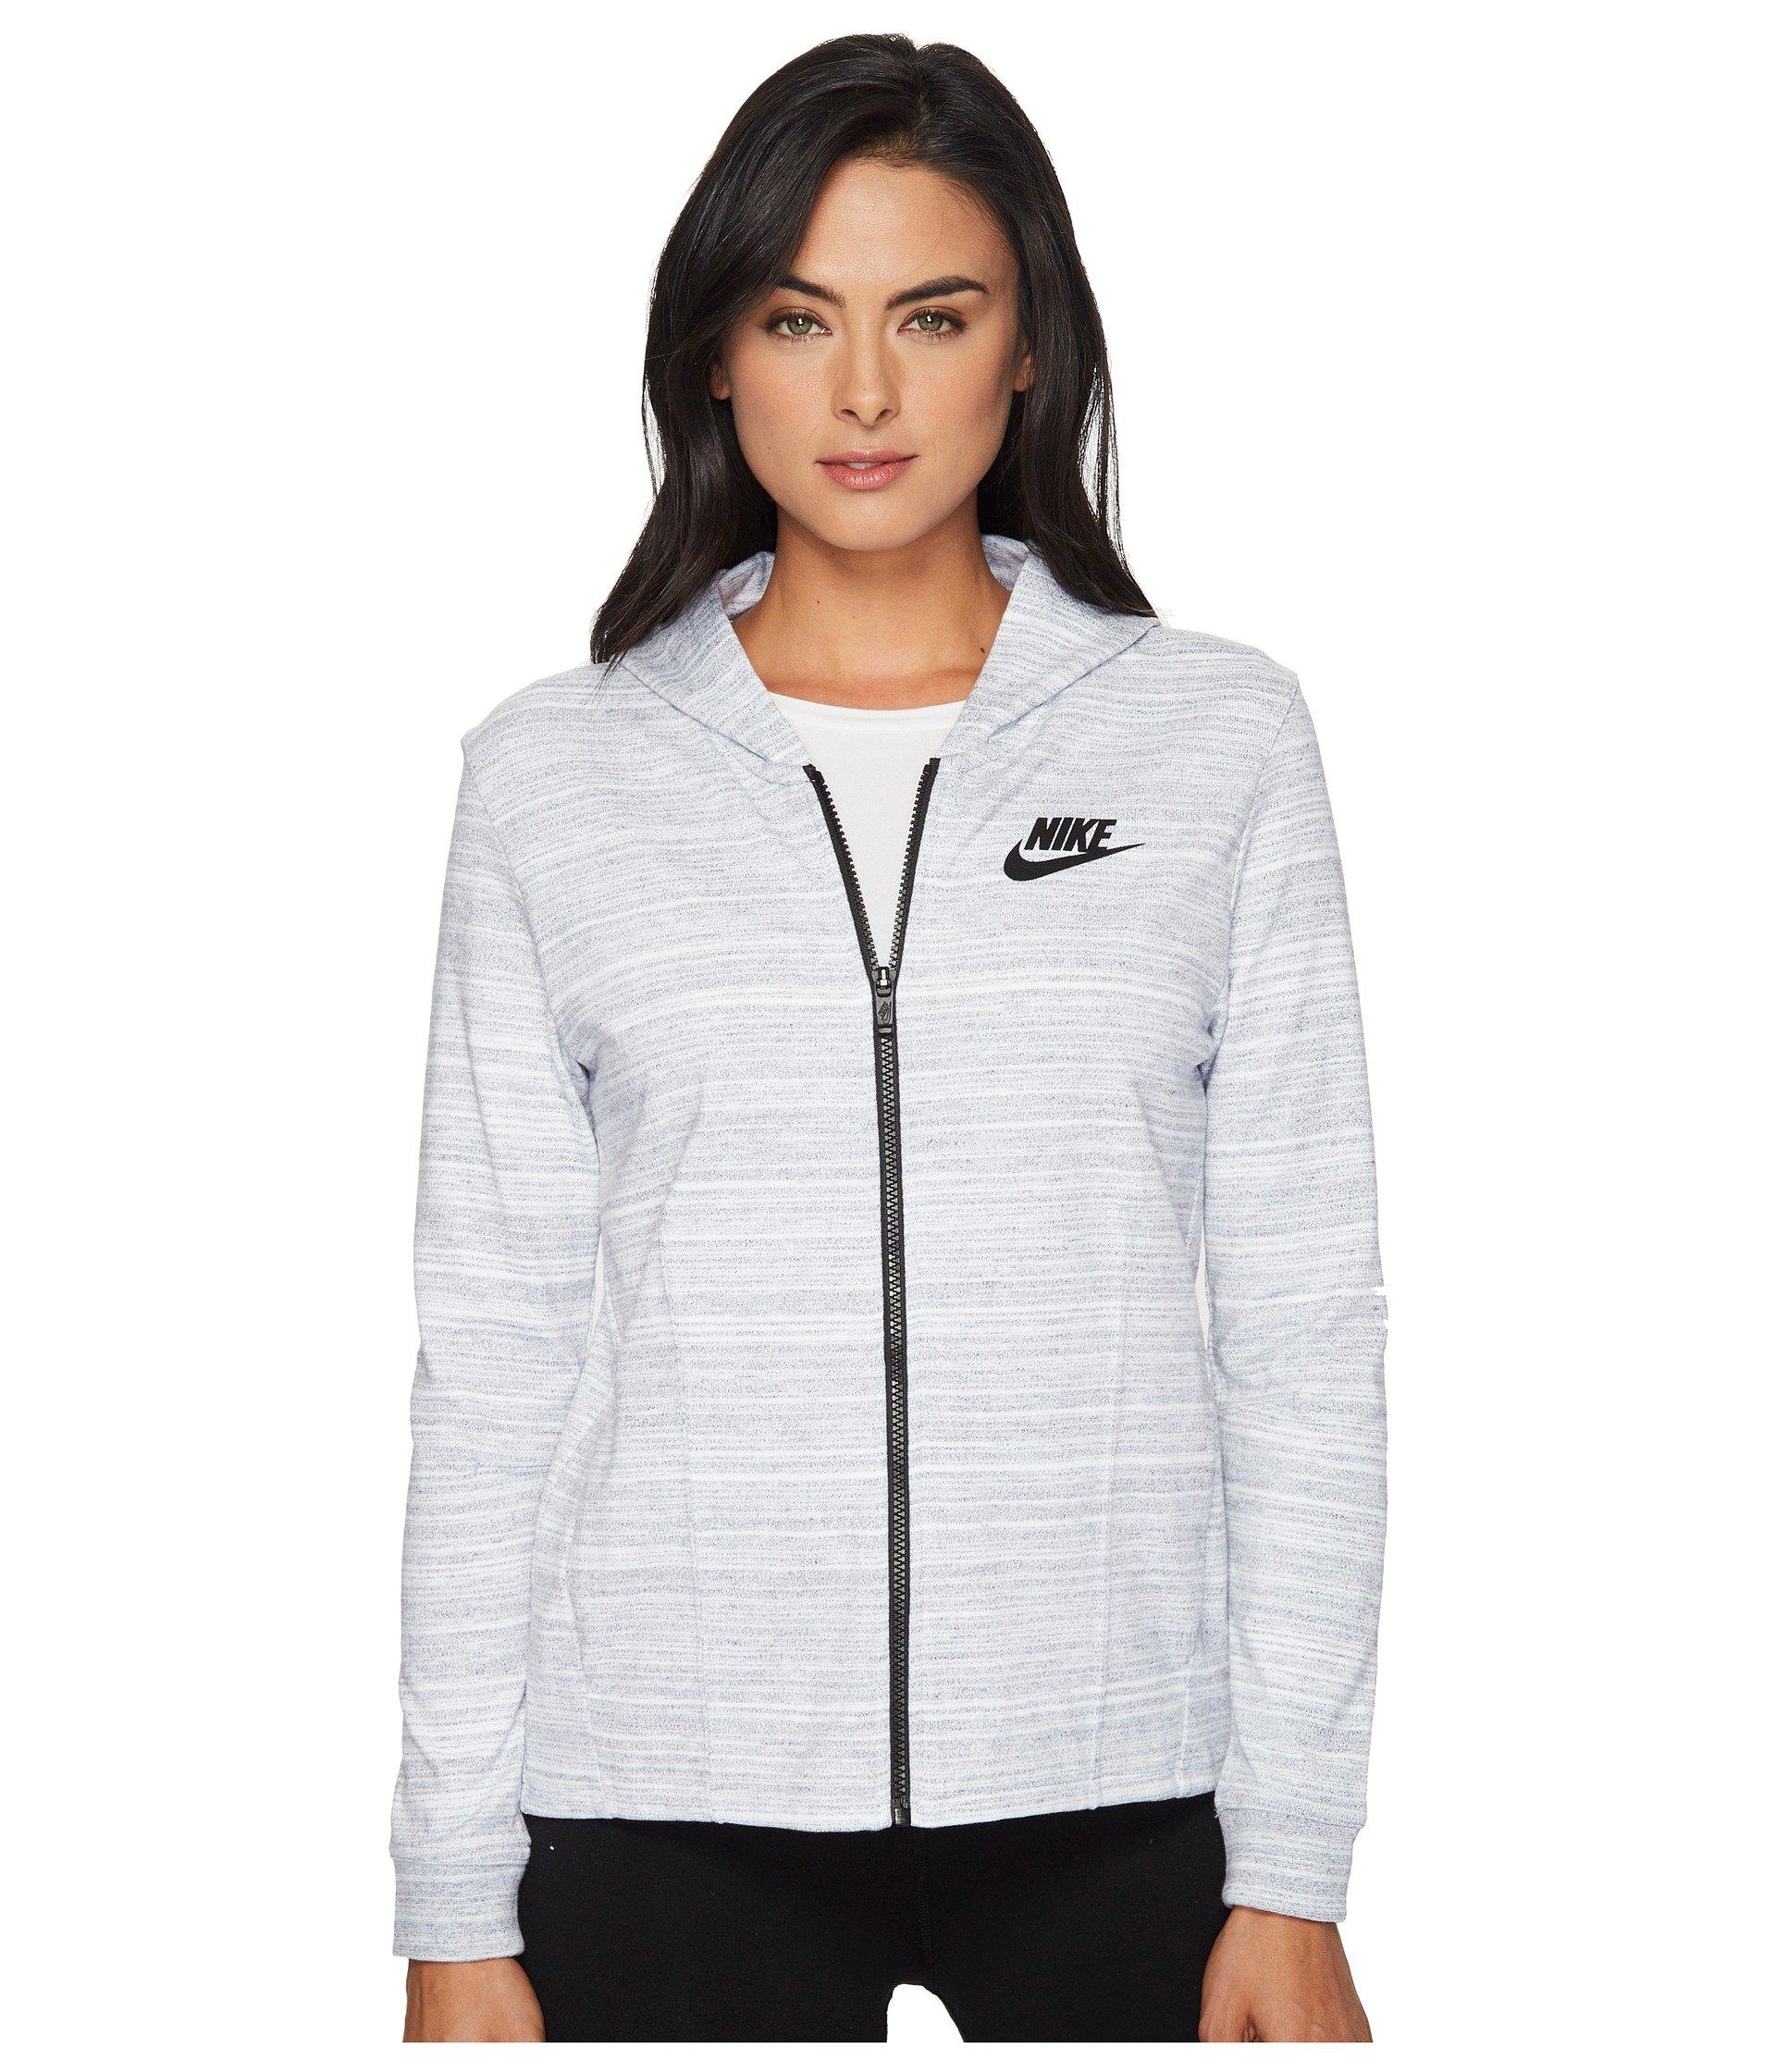 Nike Sportswear Advance 15 Knit Jacket In White/black | ModeSens